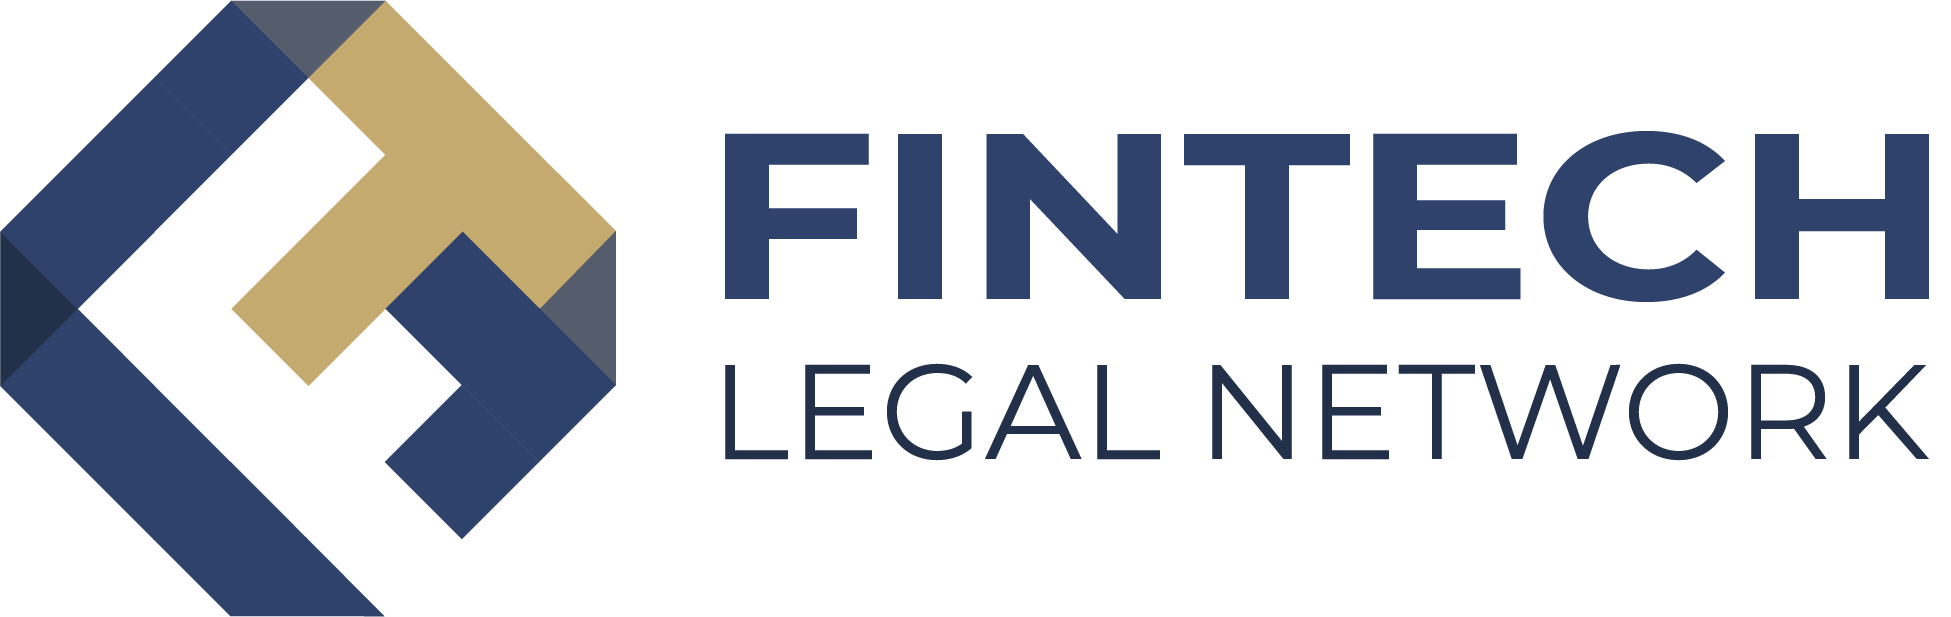 logo fintech legal network